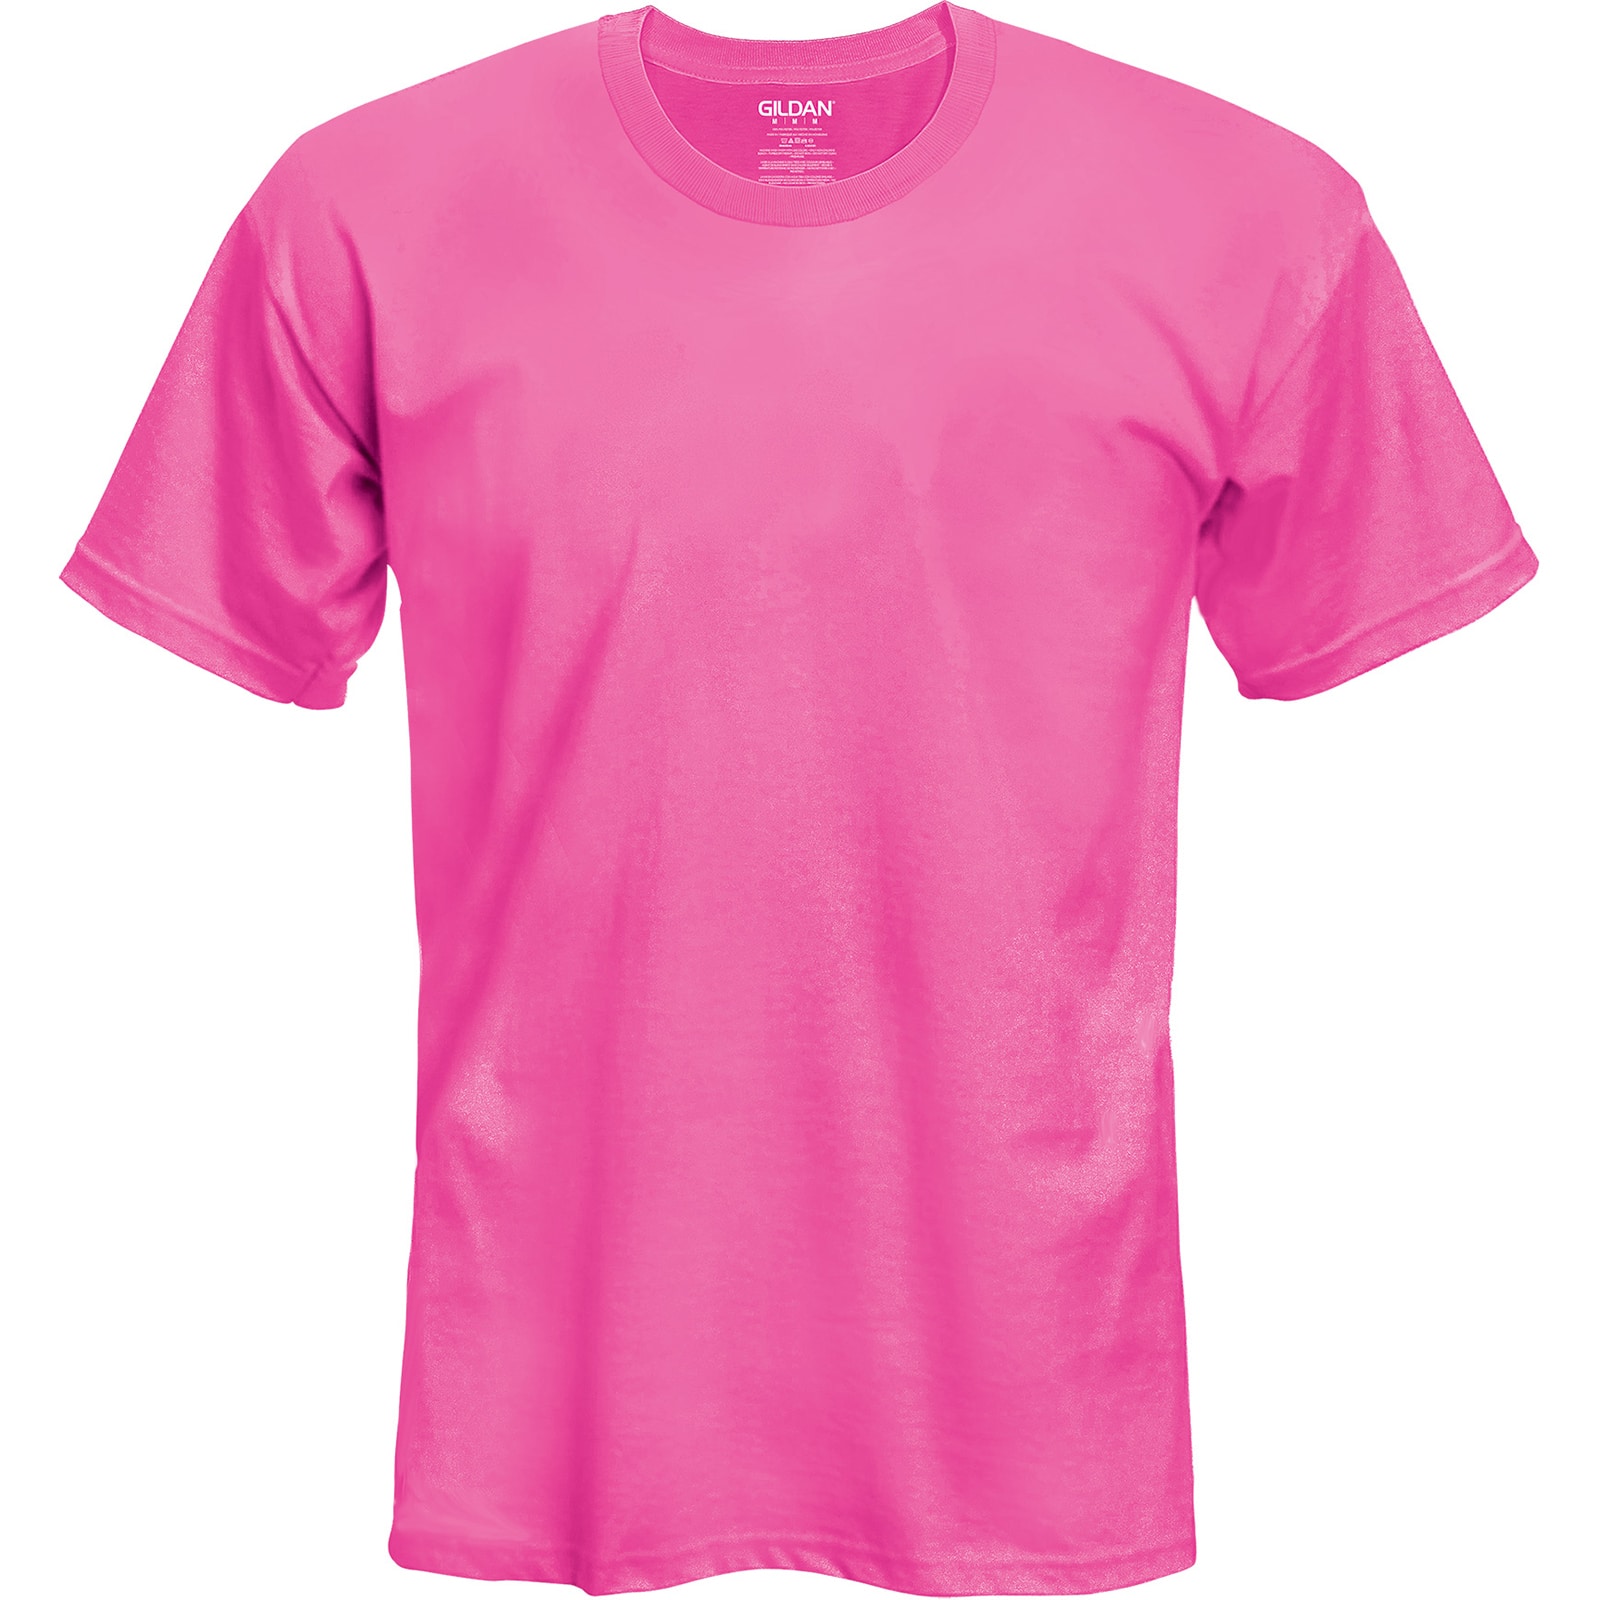 Unisex T-Shirt Gildan Fashion Unisex T Shirt 2021 Woman Shirt Man Shirt Unisex T Shirt